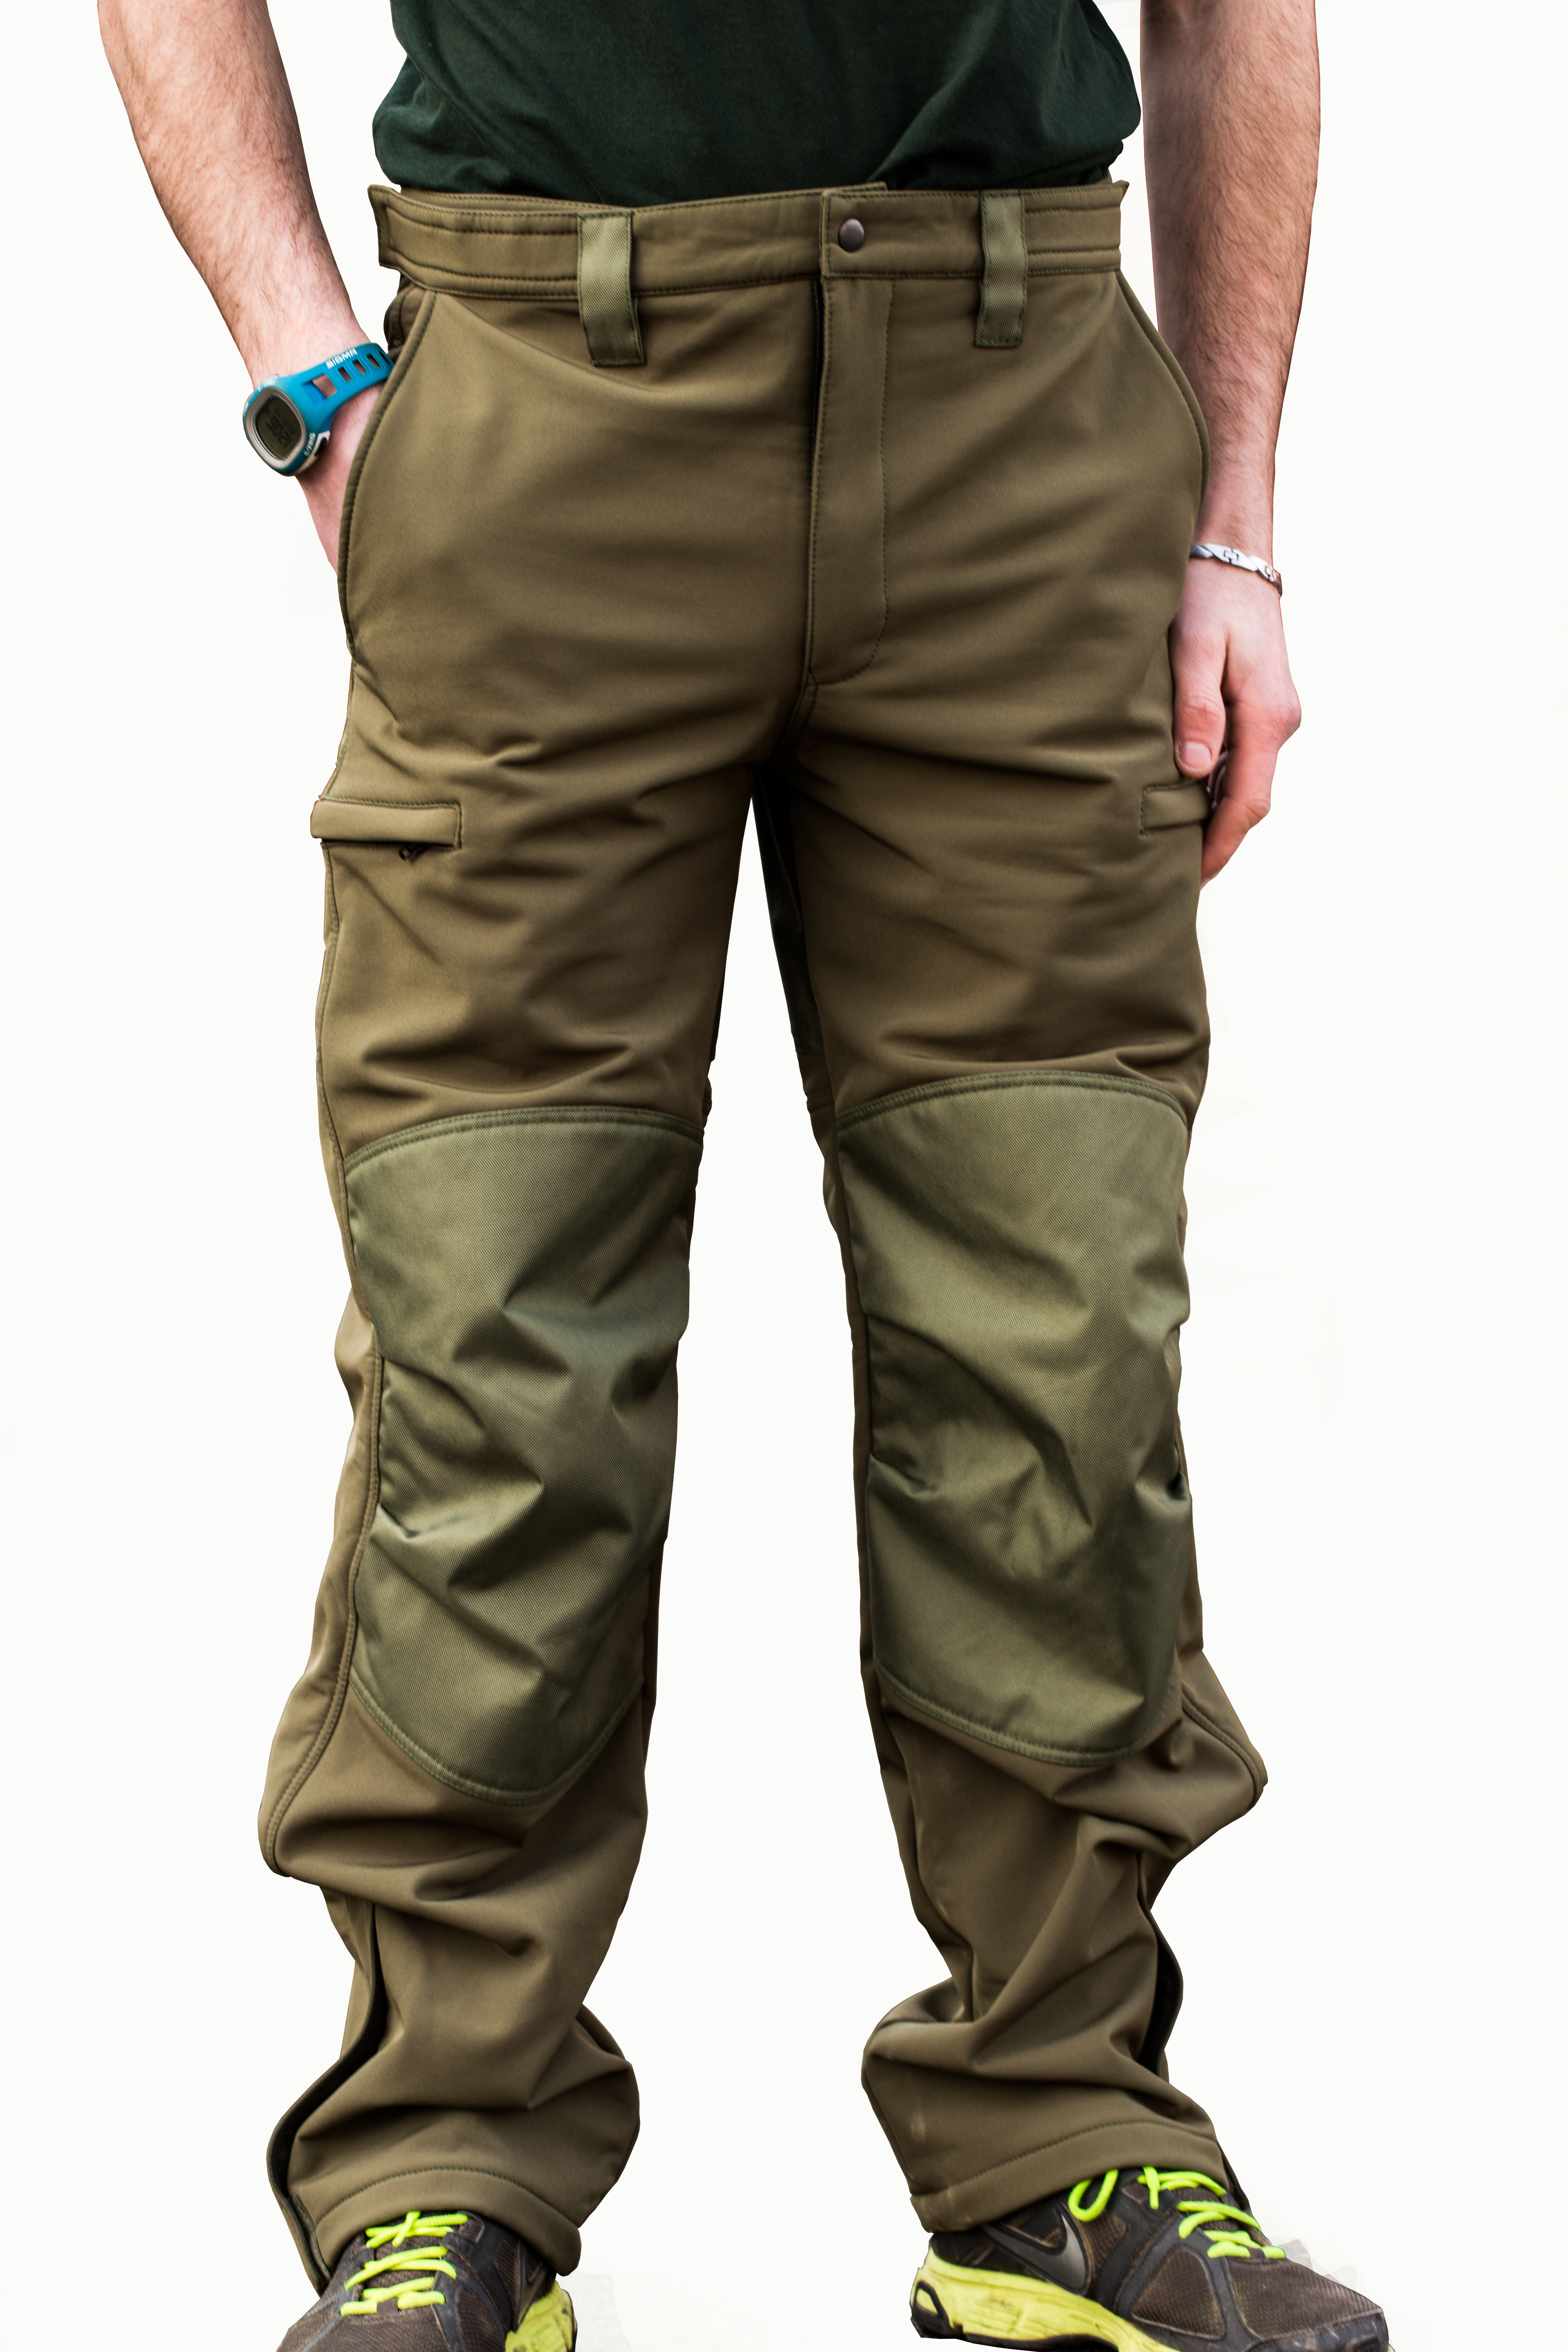 Mikbaits oblečení - Nepromokavé funkční kalhoty Mikbaits STR zelené S